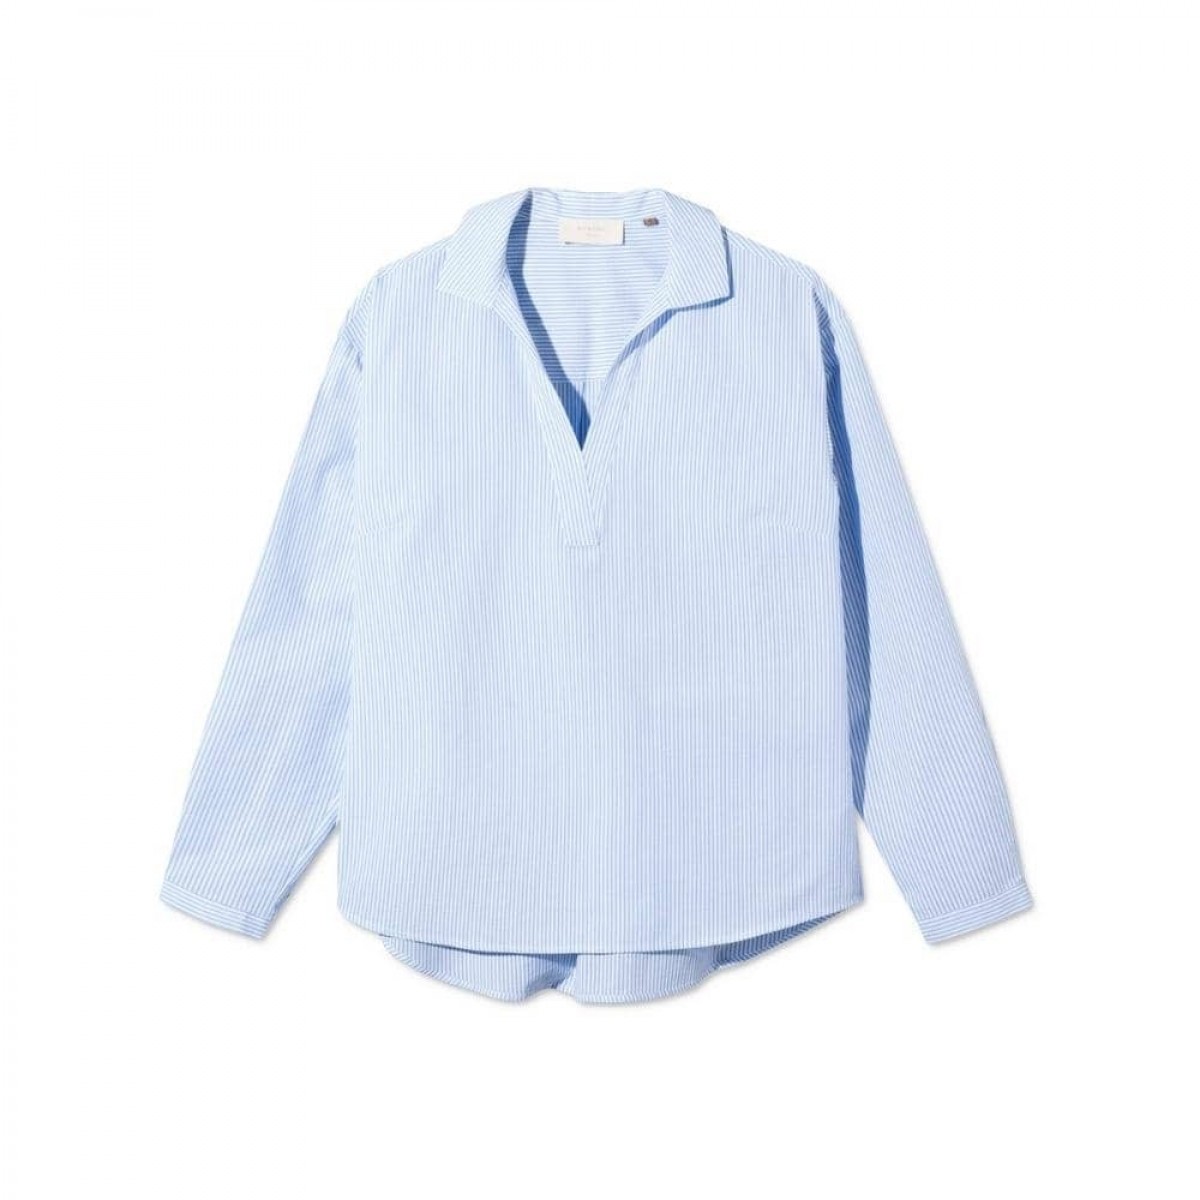 safa shirt - light blue / white stripe 